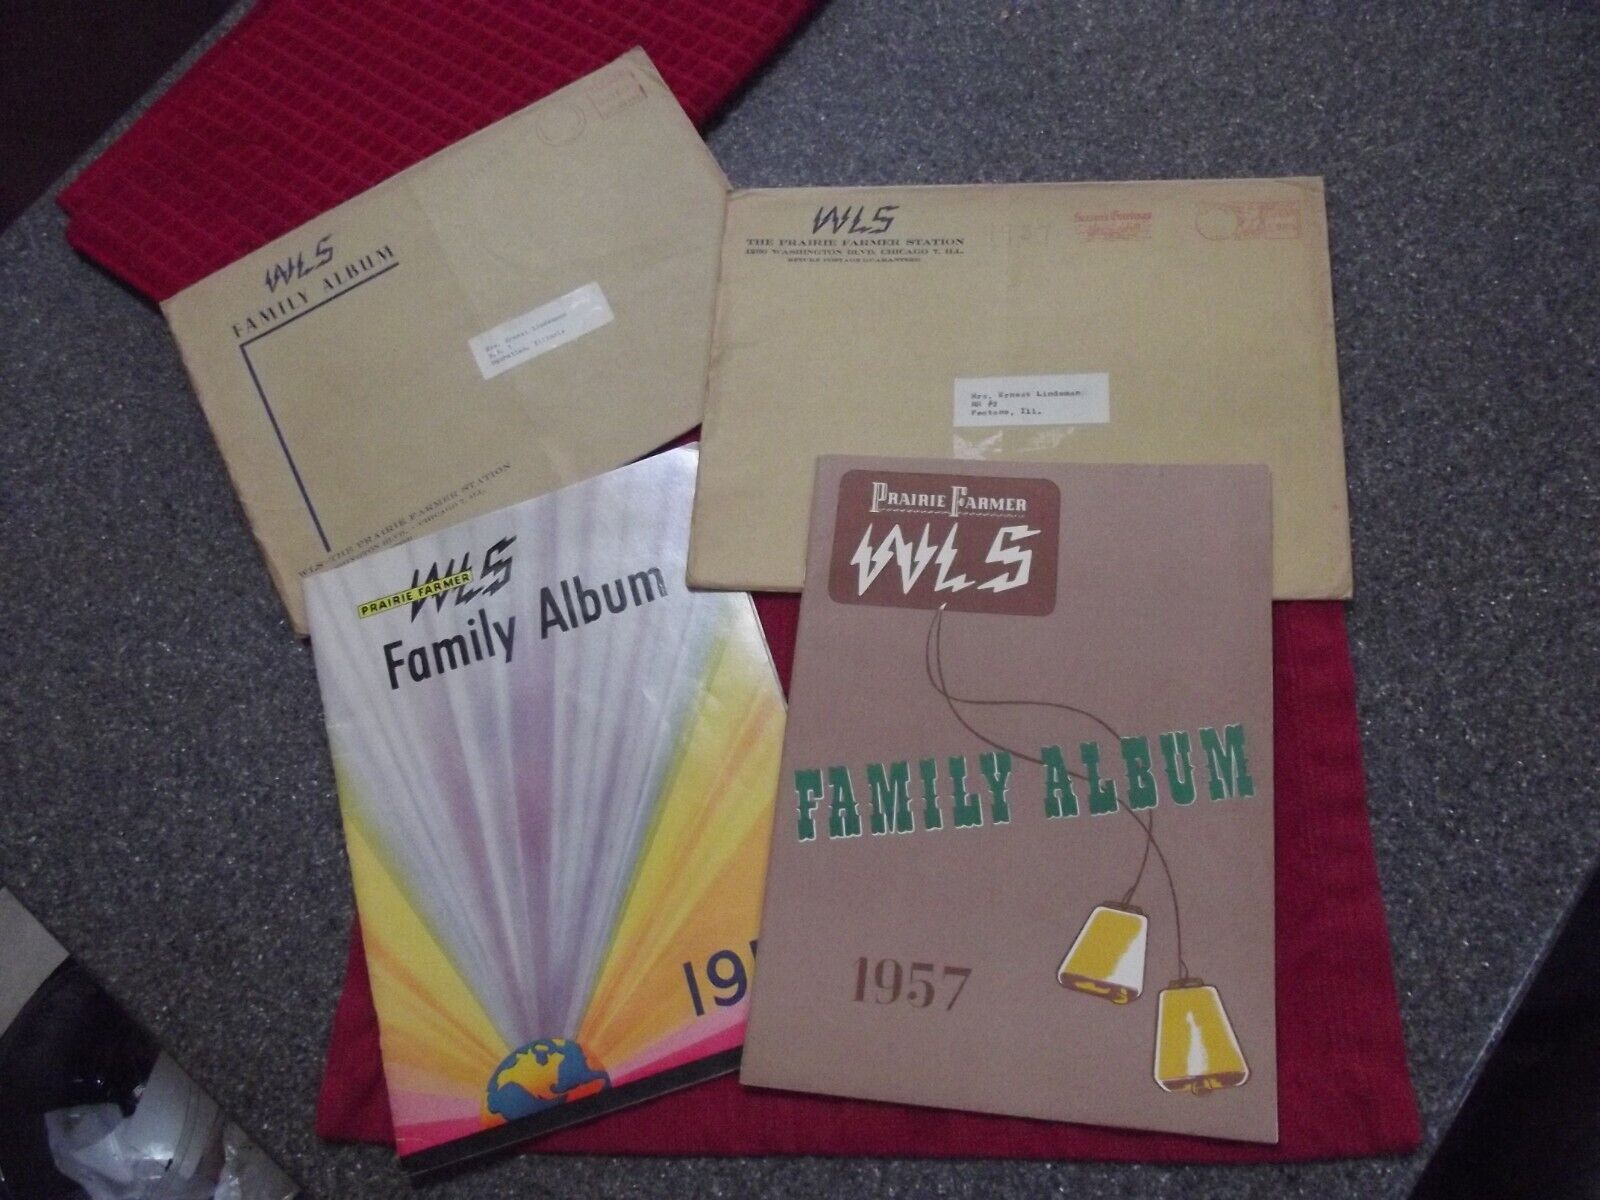 2-WLS Prairie Farmer Album , 1953&1957 with original WLS mailing envelopes